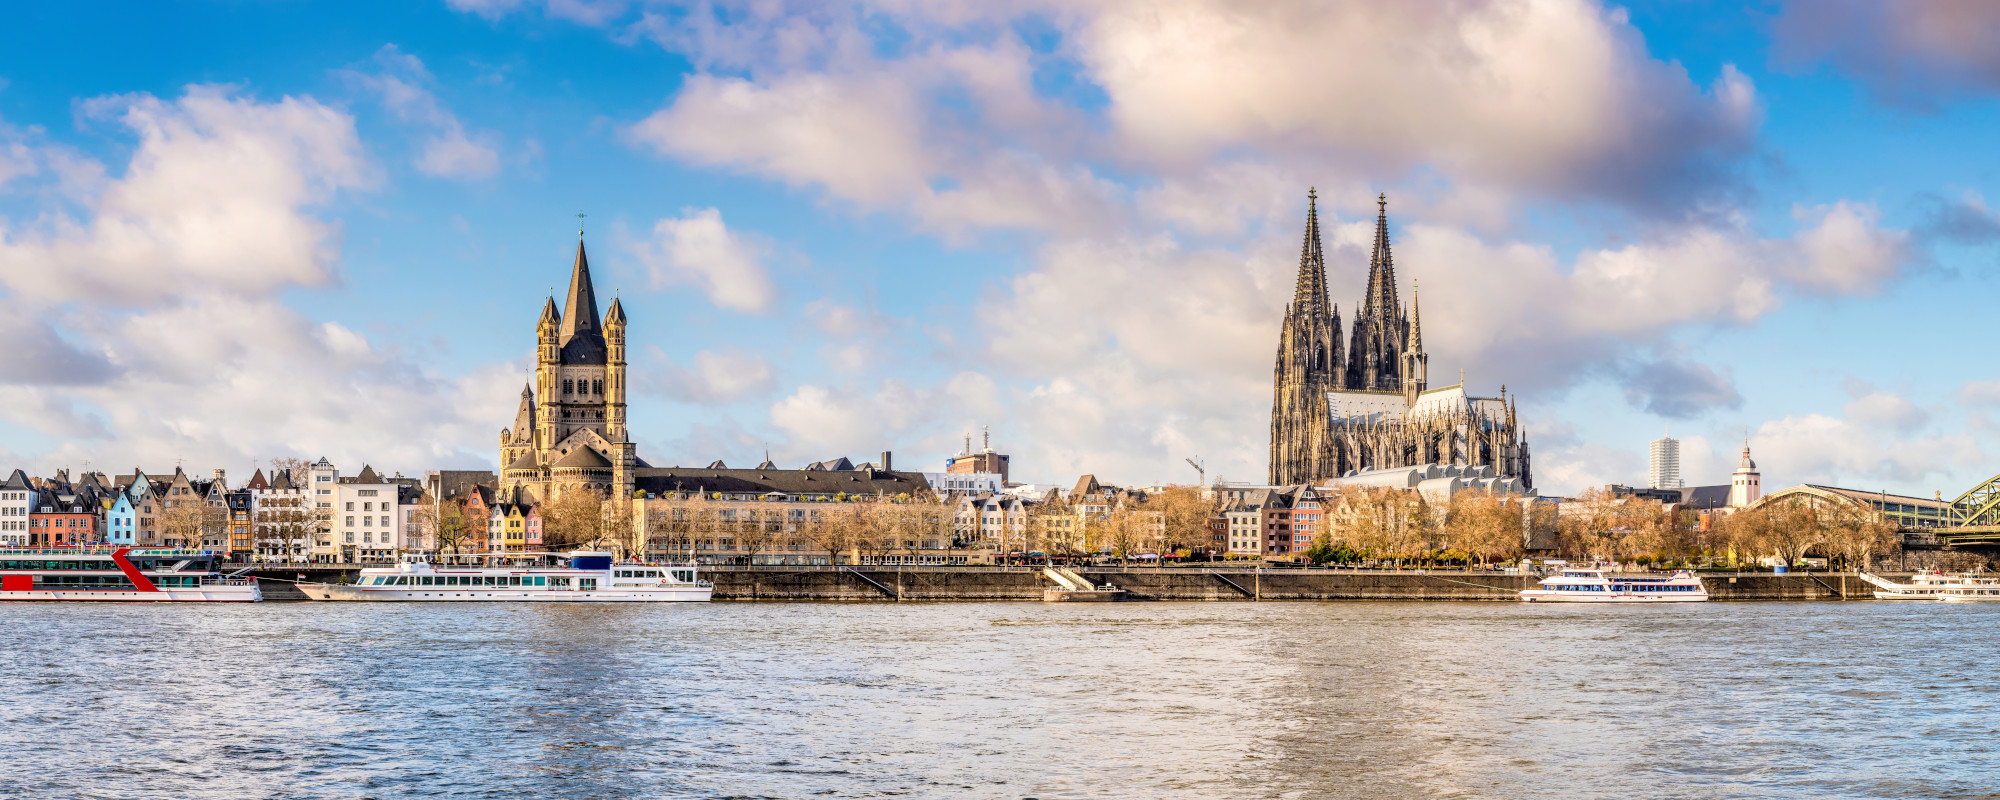 Blick auf die Skyline in Köln mit Dom und anliegenden Schiffen auf dem Rhein